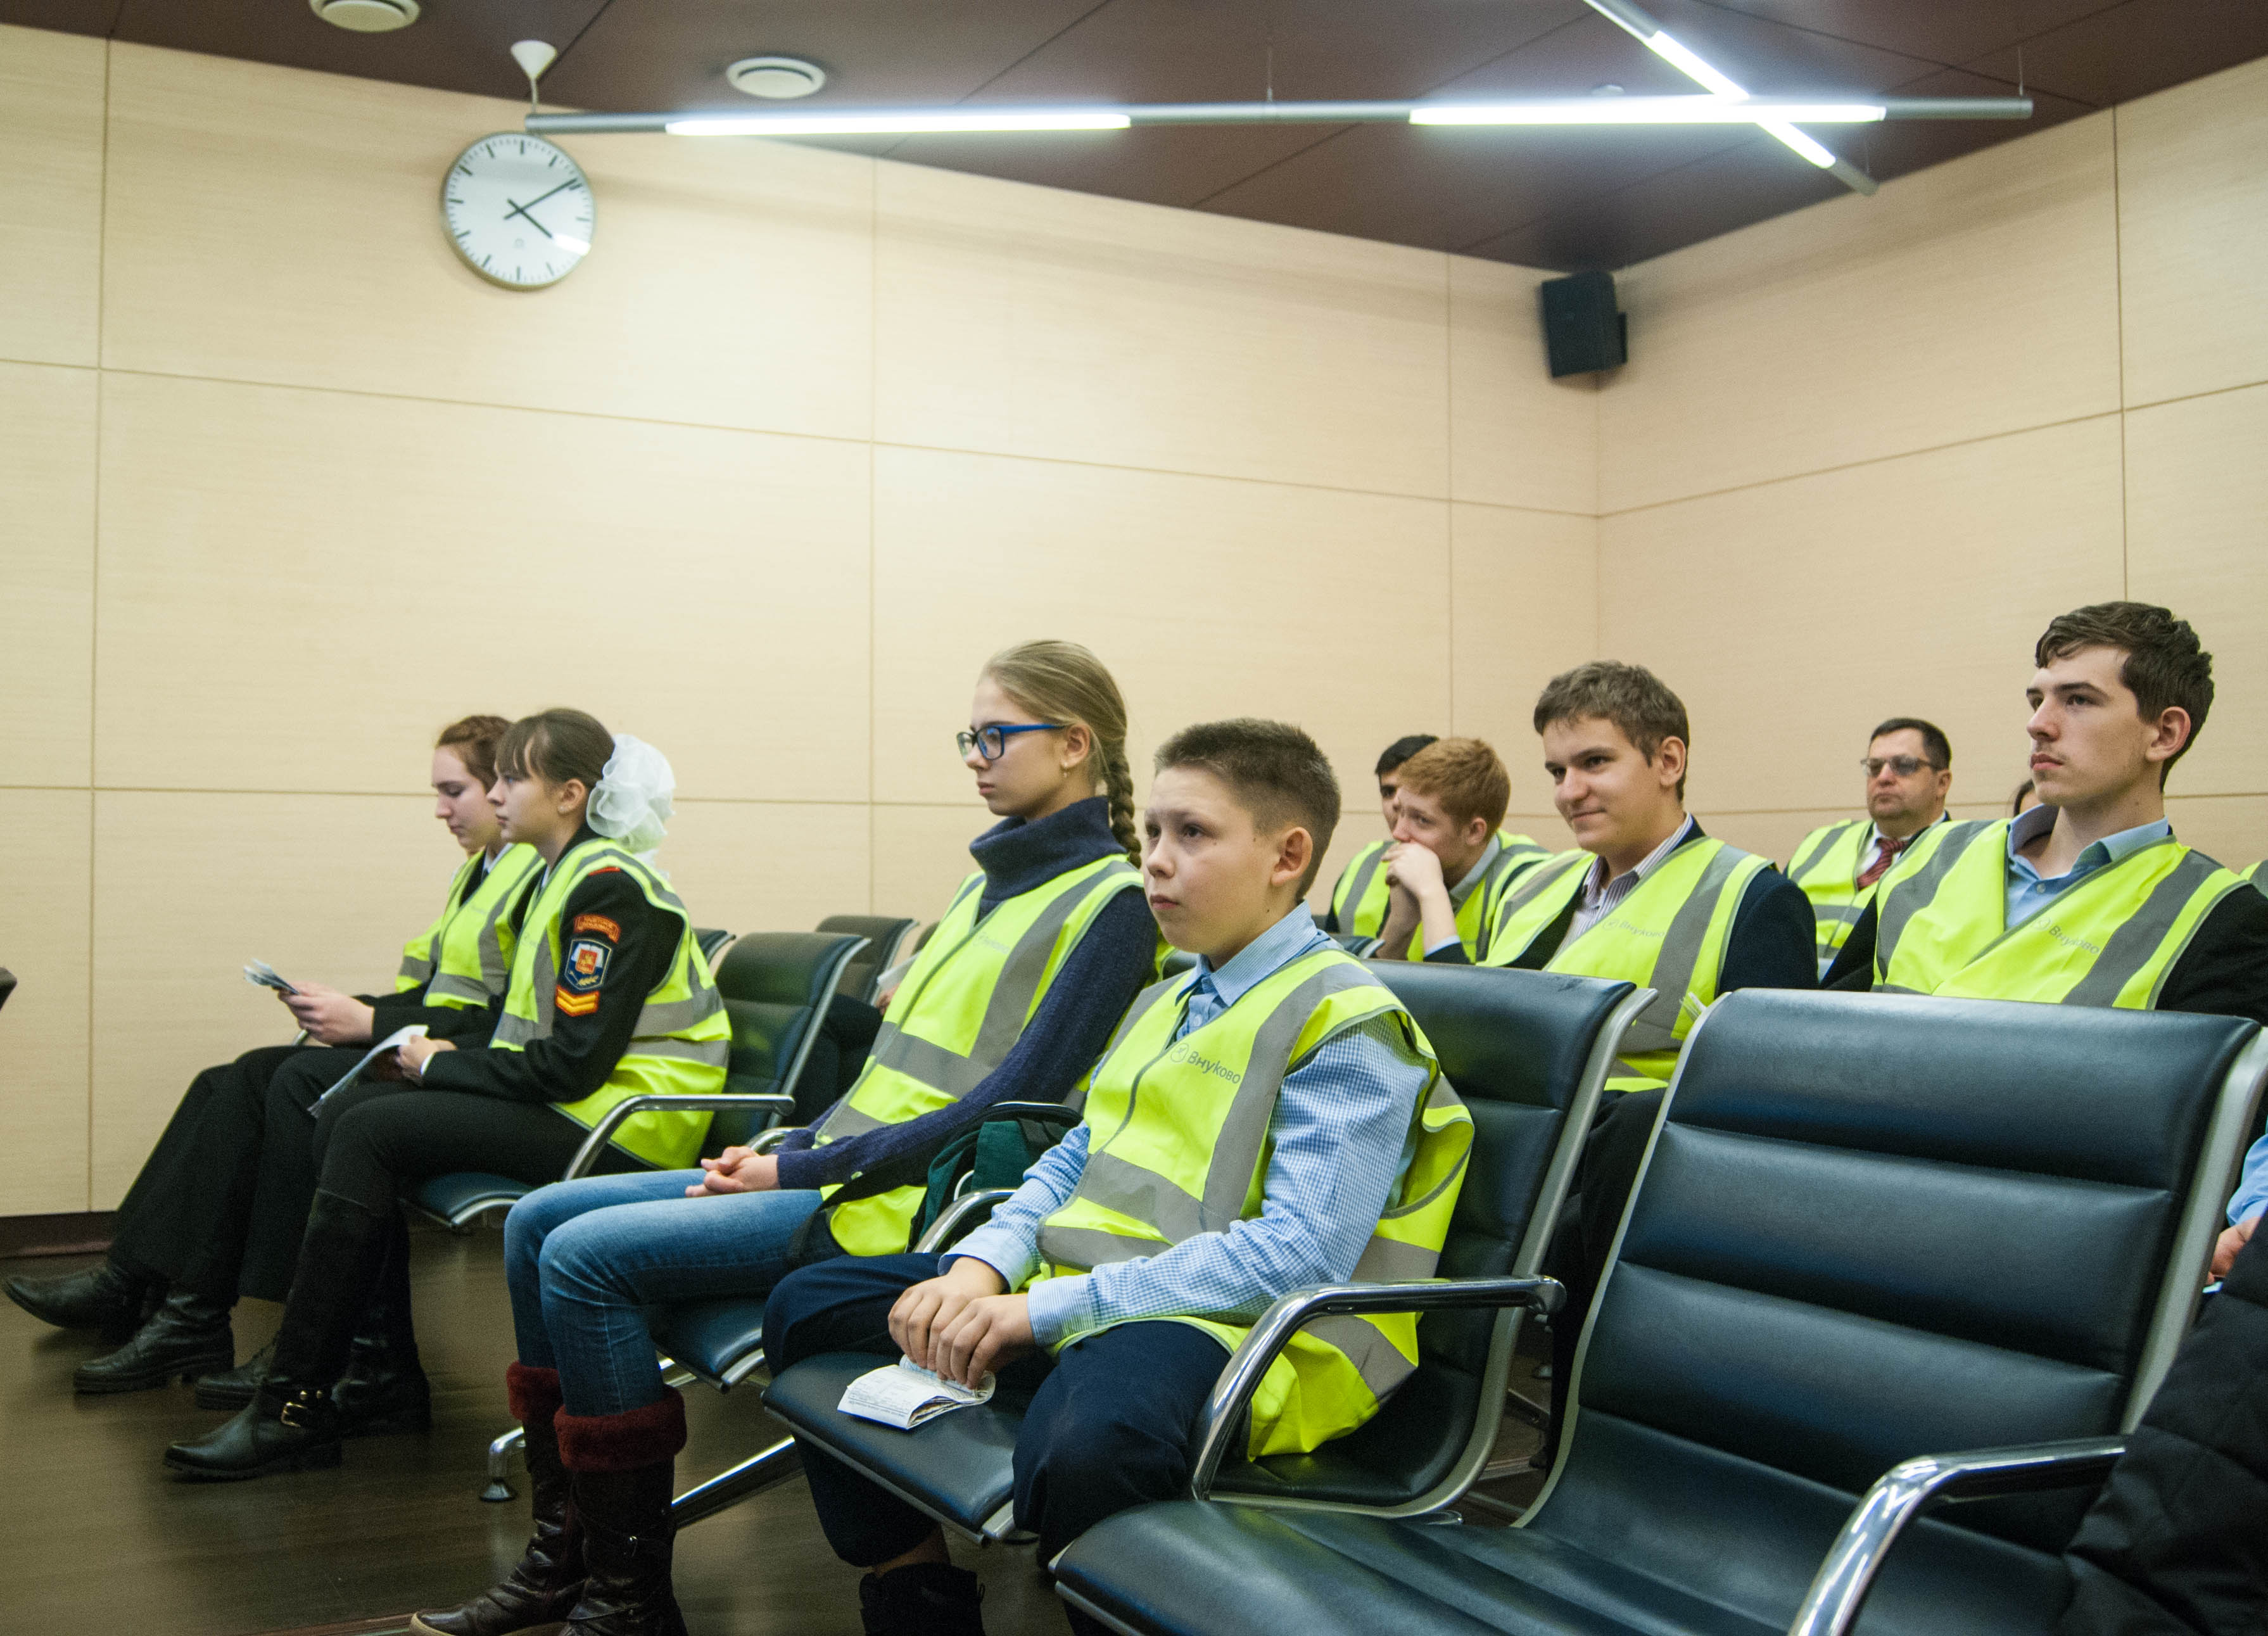 Аэропорт Внуково провел экскурсию для учеников школы с углубленным изучением математики и информатики | Международный аэропорт Внуково